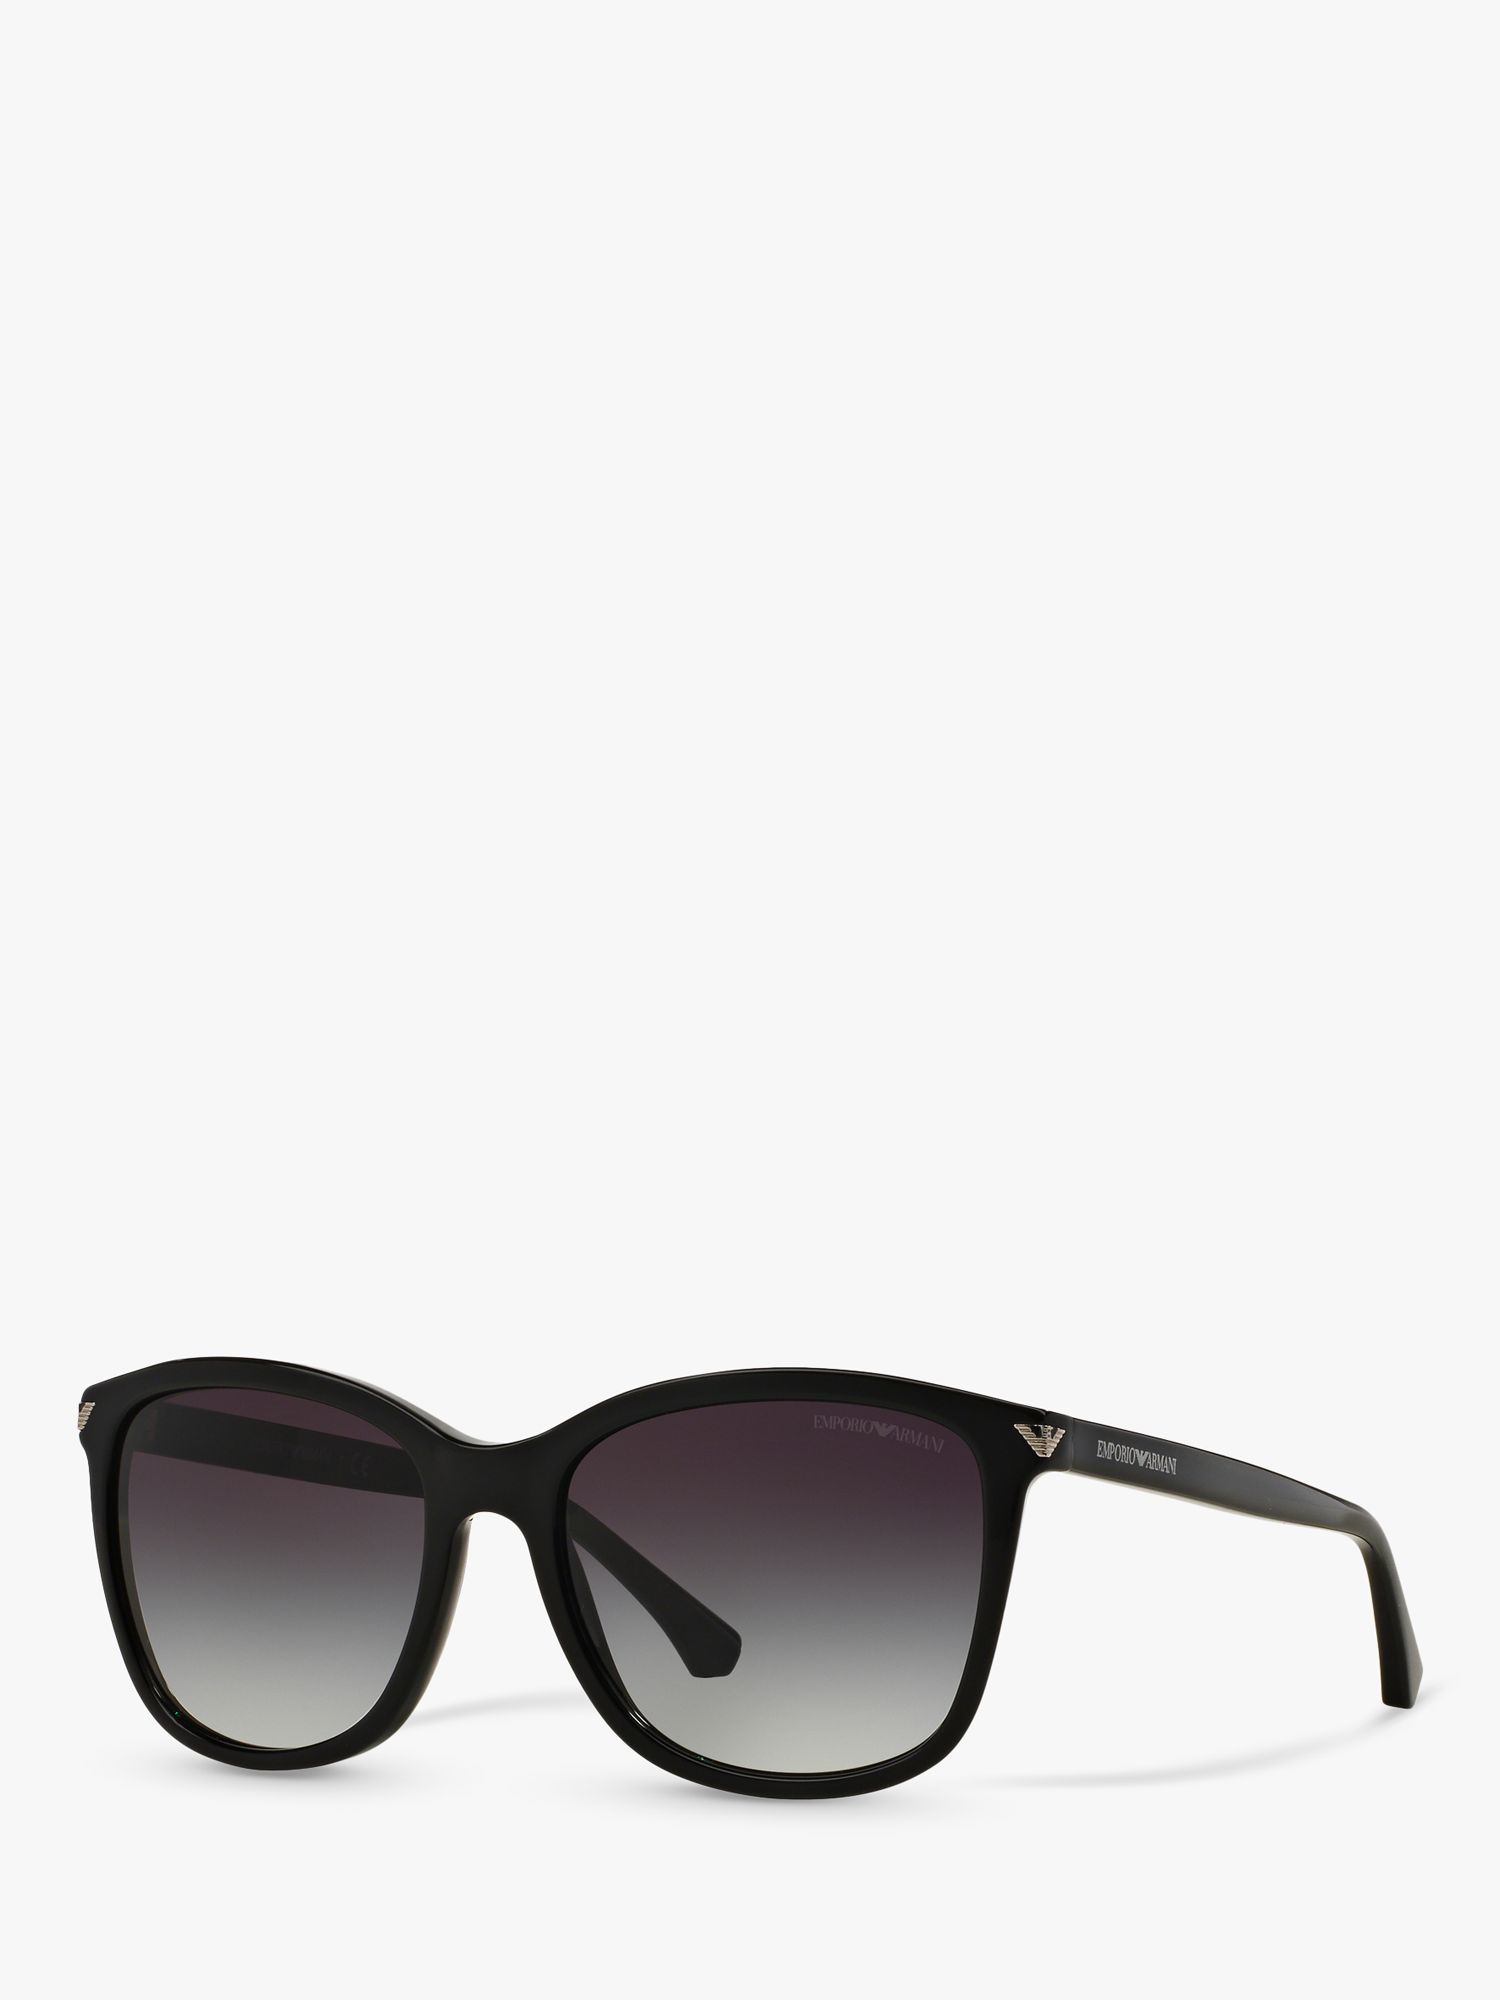 Emporio Armani EA4060 Женские квадратные солнцезащитные очки, черный/серый с градиентом